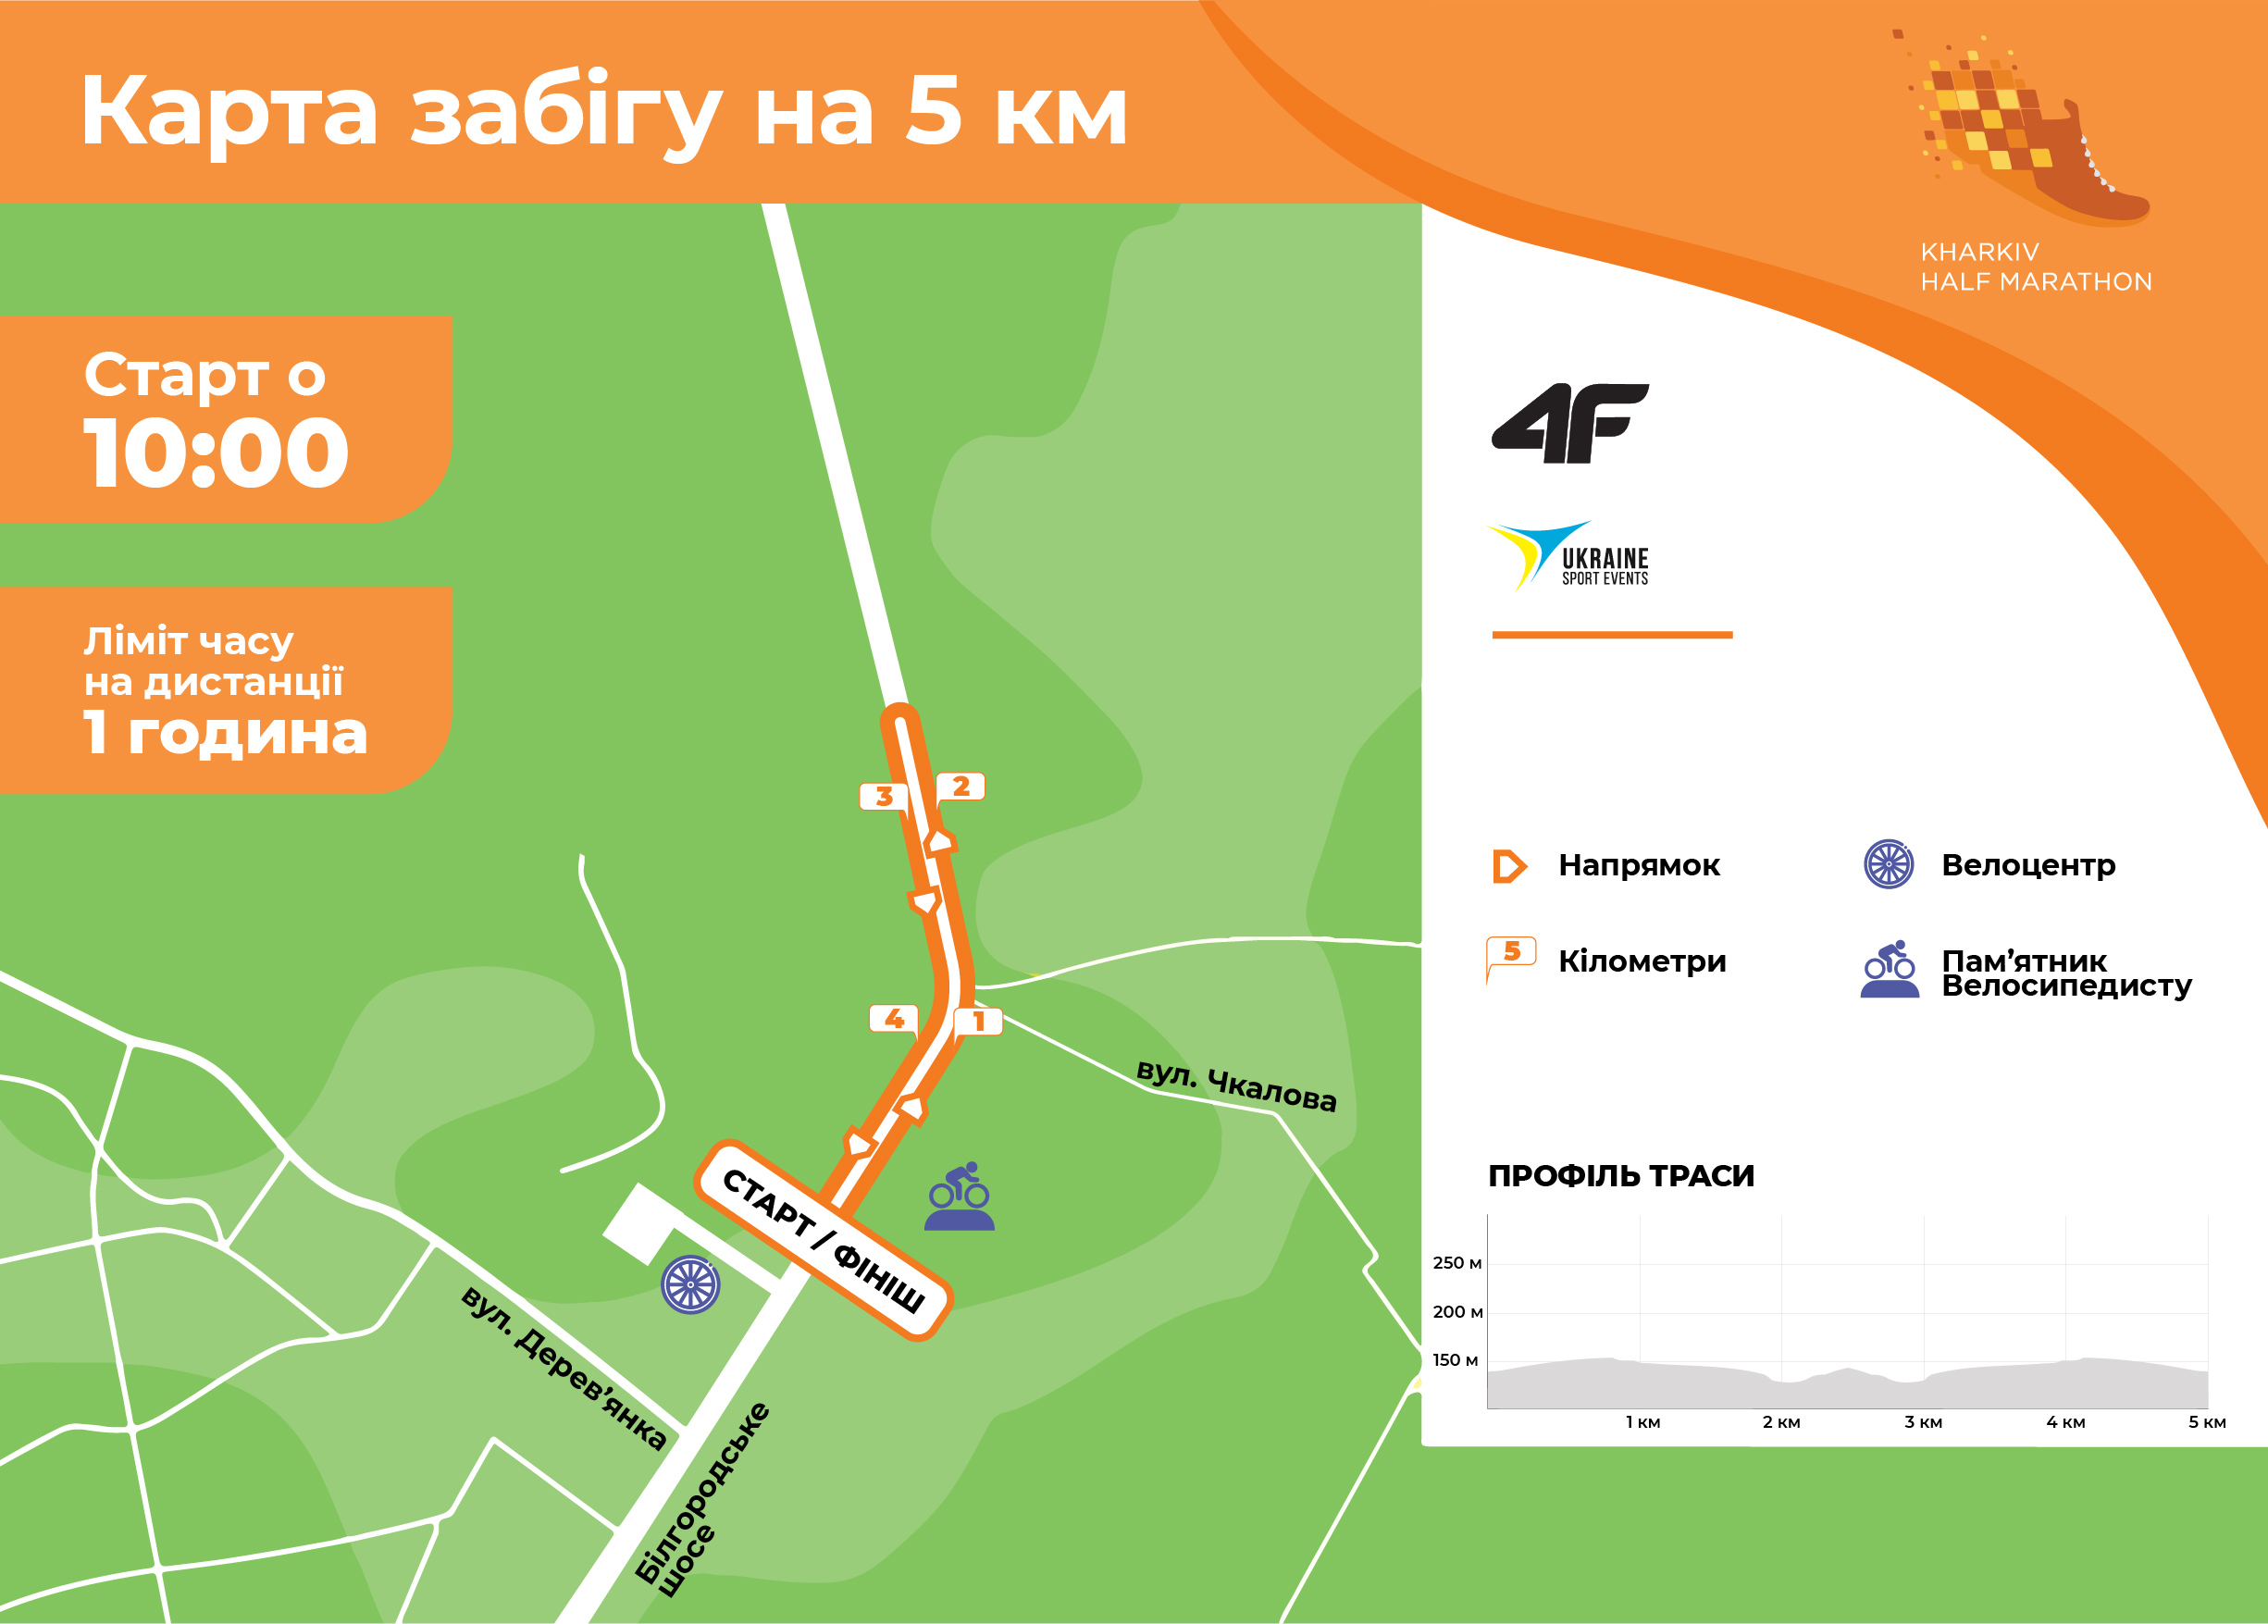 Kharkiv Half Marathon 2021